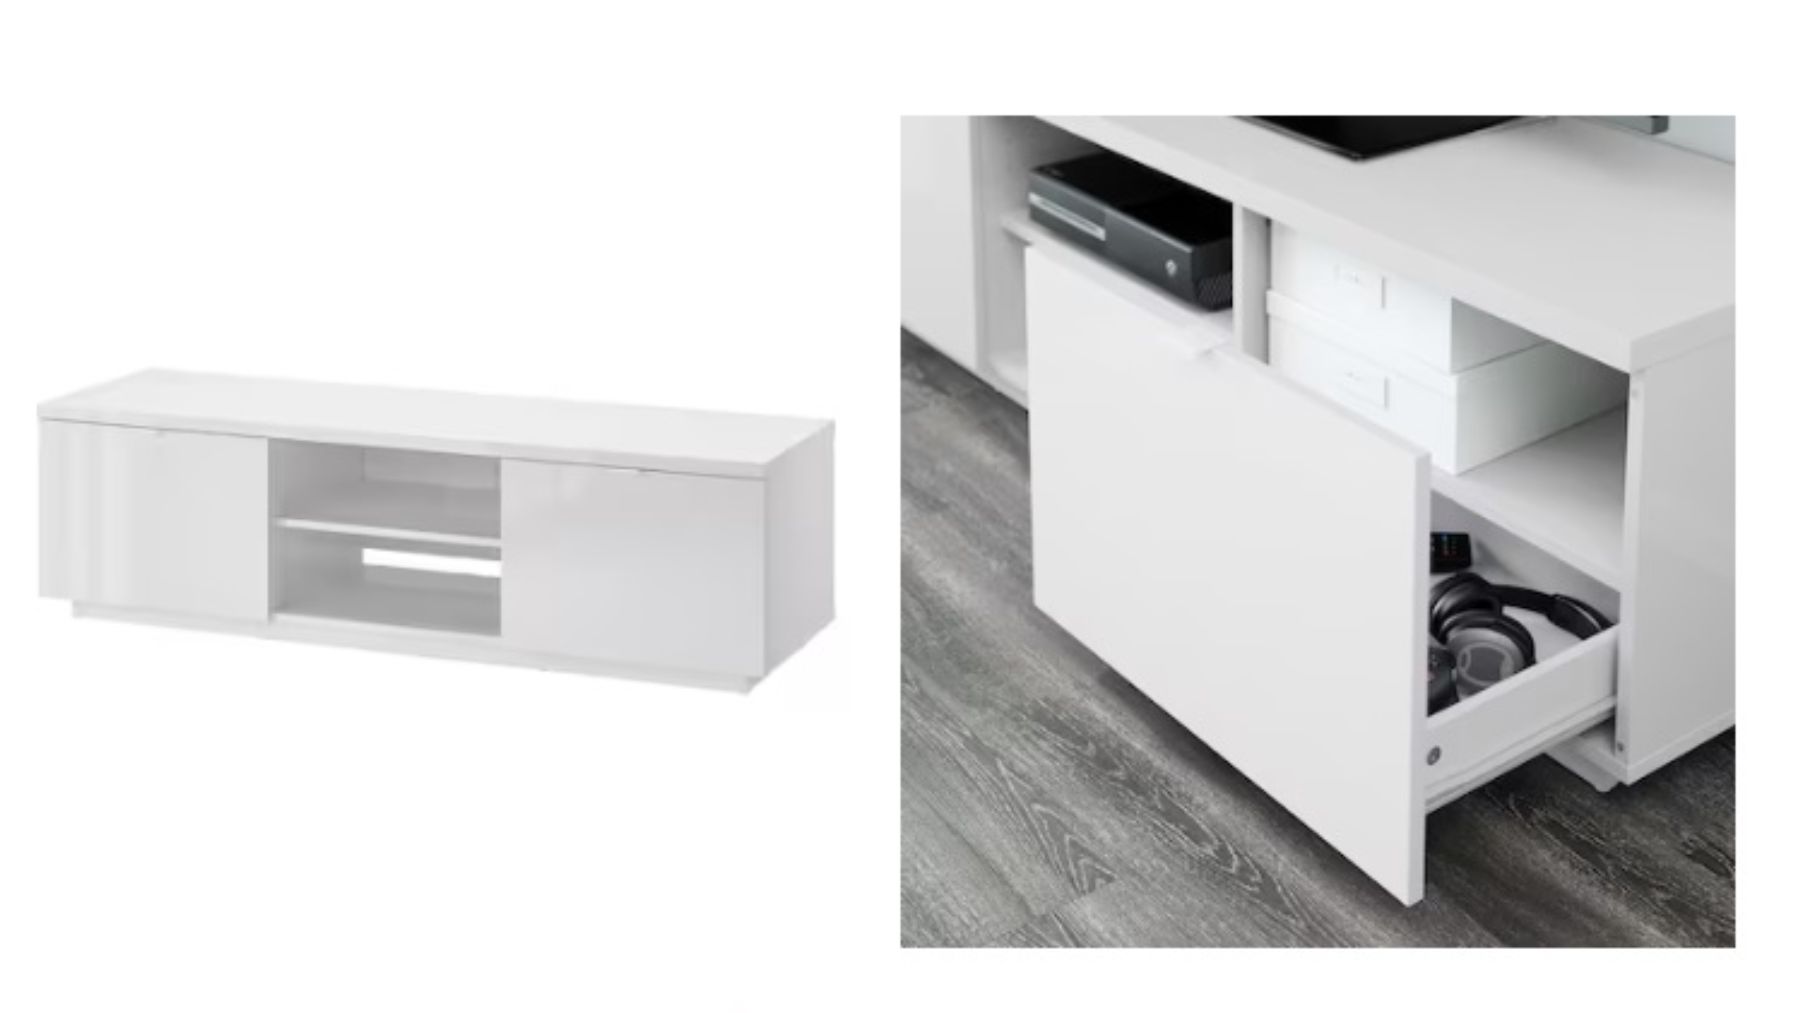 Este mueble TV más vendido de Ikea es muy práctico, funcional y con  bastante capacidad (y lo mejor, cuesta menos de 100 euros)